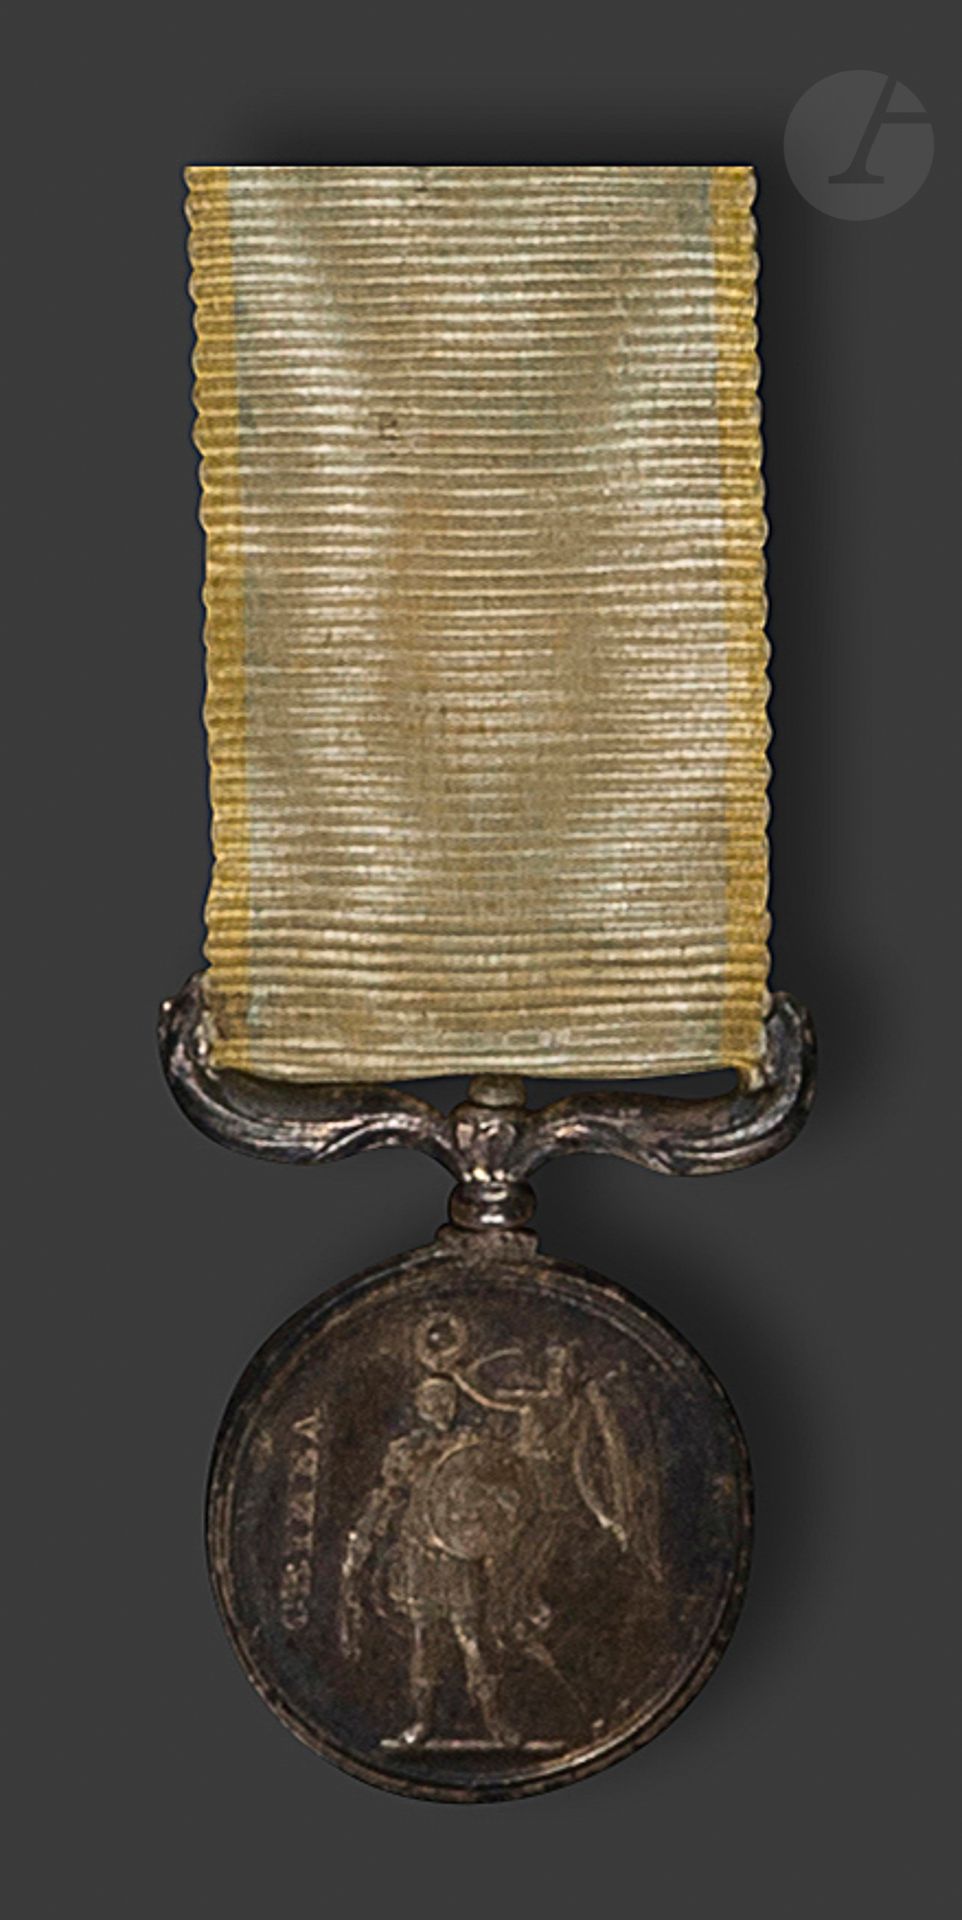 Null 大不列颠
克里米亚勋章，缩小版，由Wyon制作
。
 
在银。
22 x 18 mm - 毛重 : 4,5 g带子
。T.T.B.

出处：根据所附的&hellip;